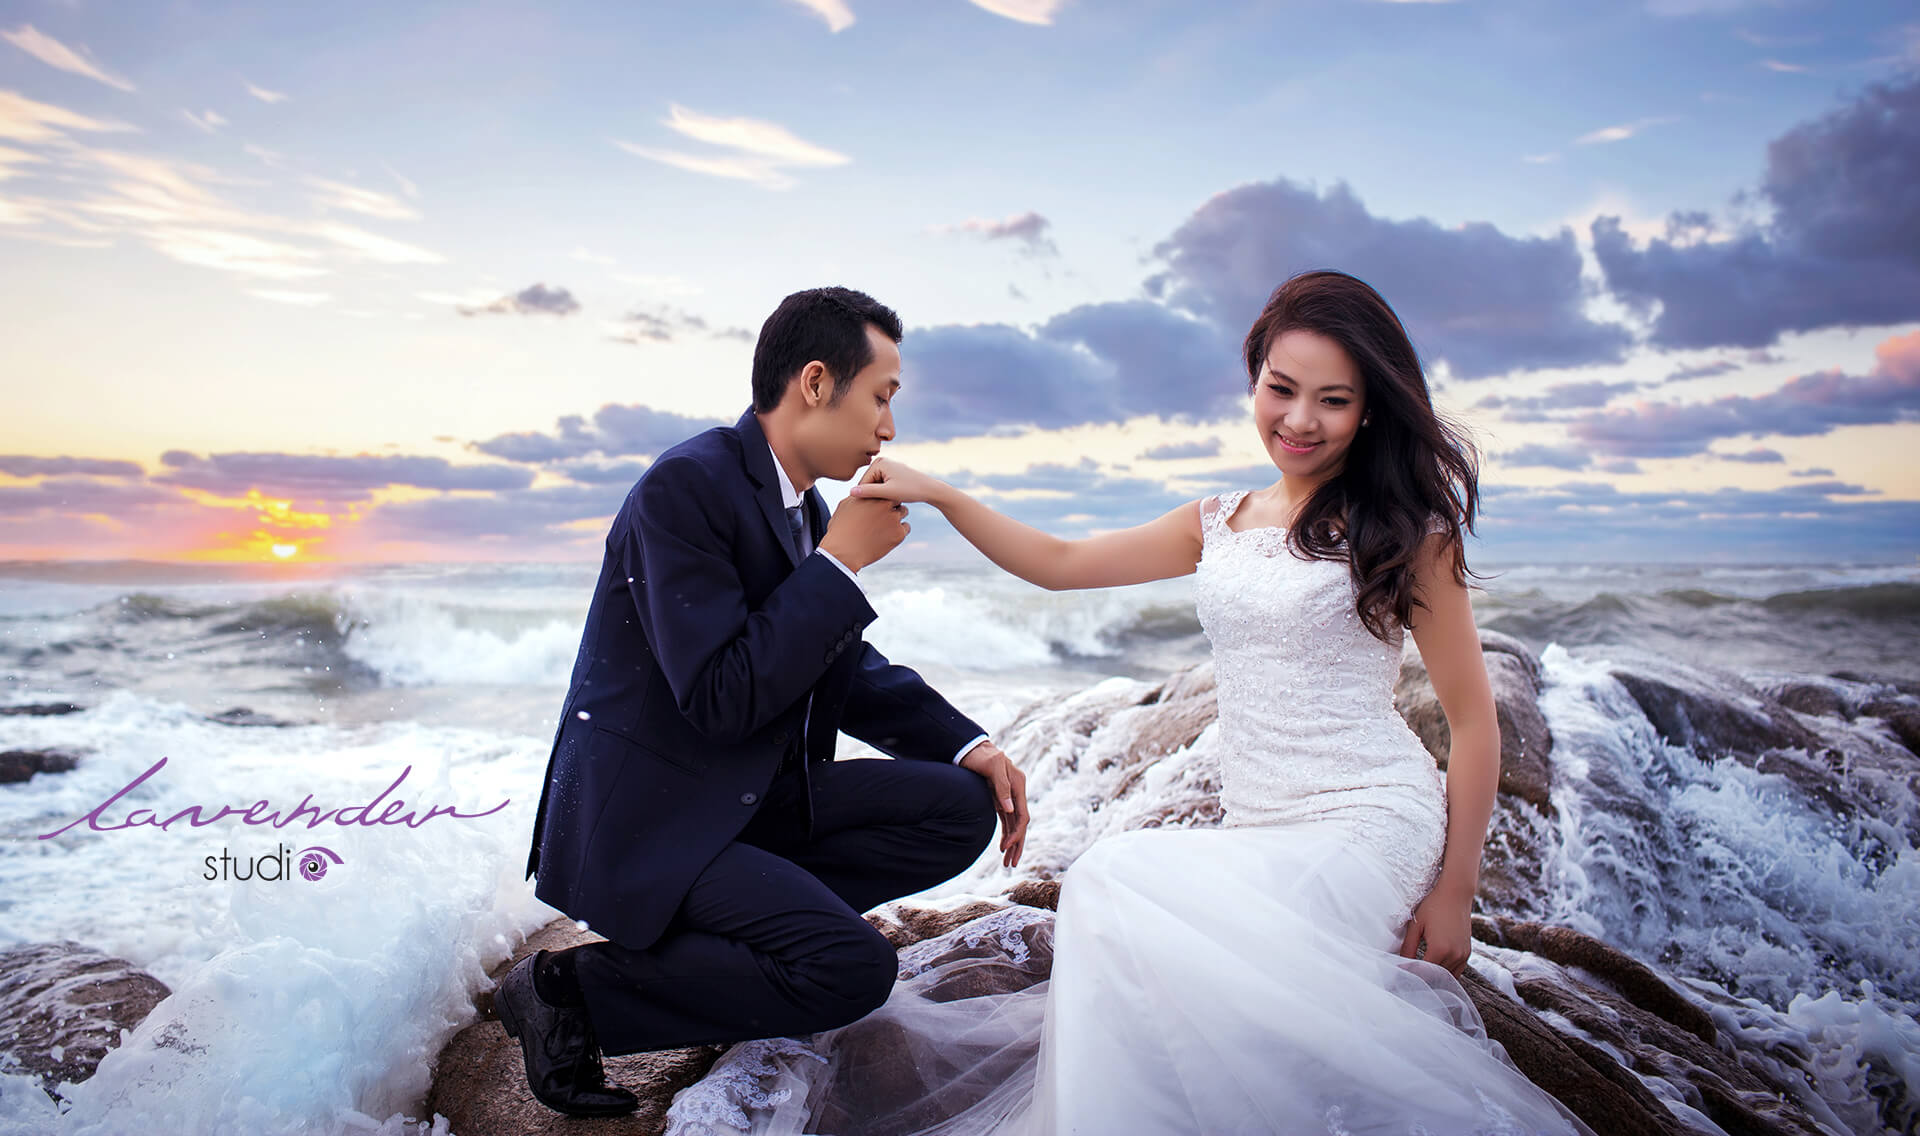 Phim trường chụp hình cưới tại Hồ Cốc Hồ Tràm lavender studio